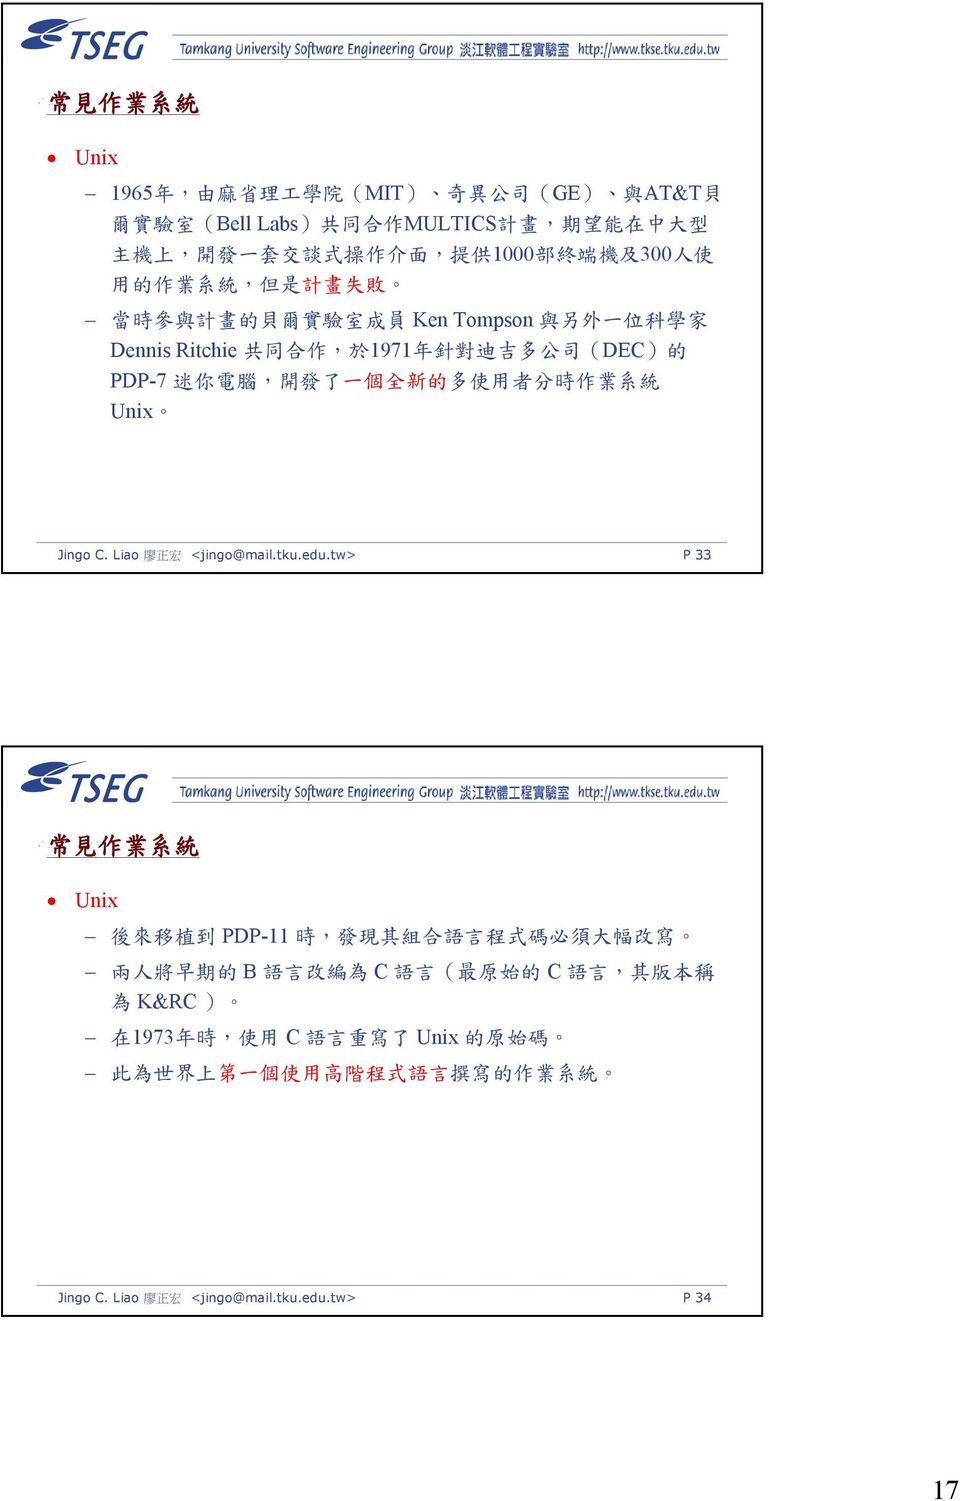 的 多 使 用 者 分 時 作 業 系 統 Unix Jingo C. Liao 廖 正 宏 <jingo@mail.tku.edu.